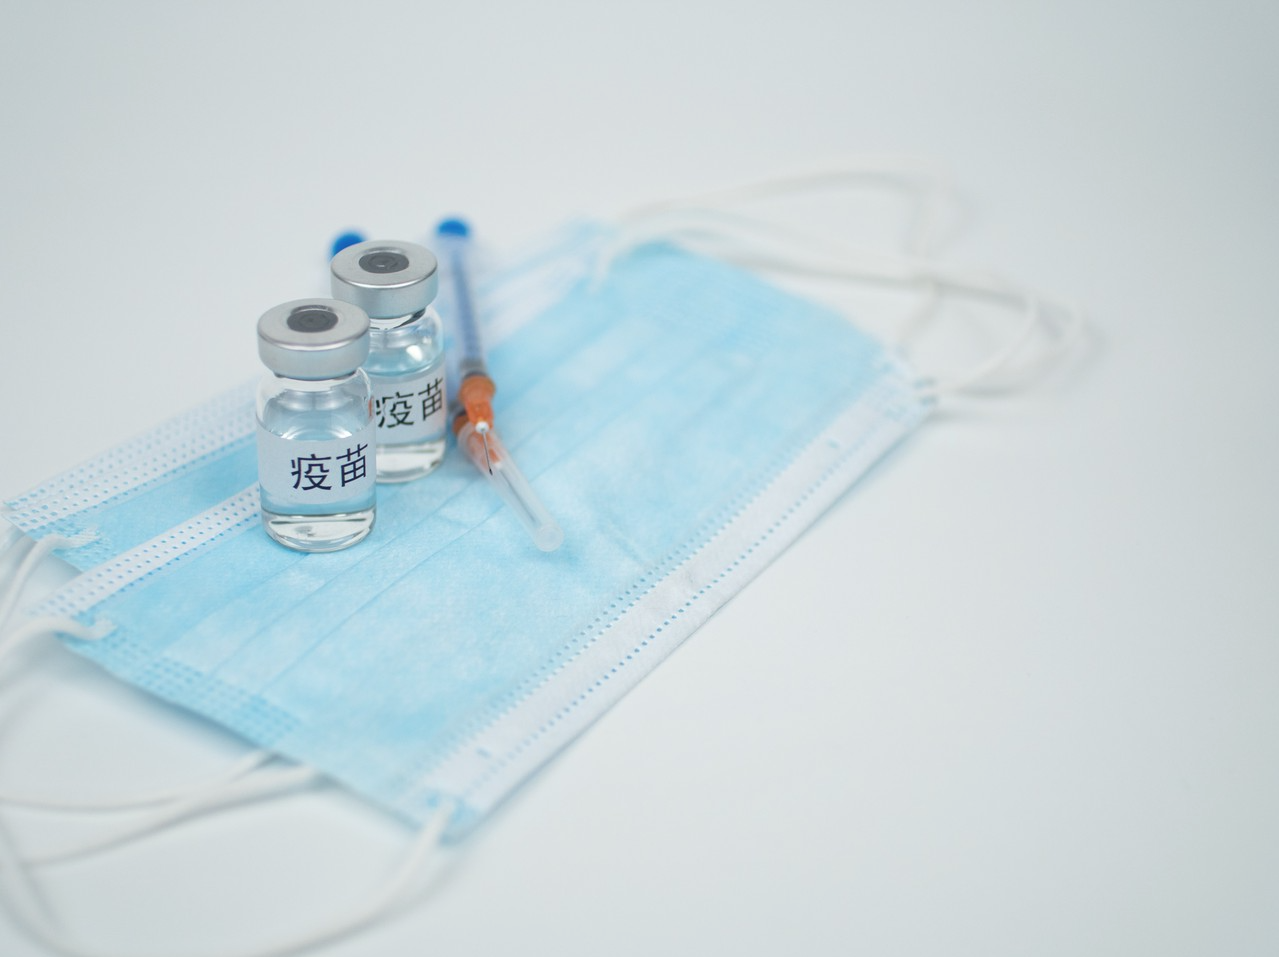 复星健康平台开通新冠疫苗赴港预约接种服务